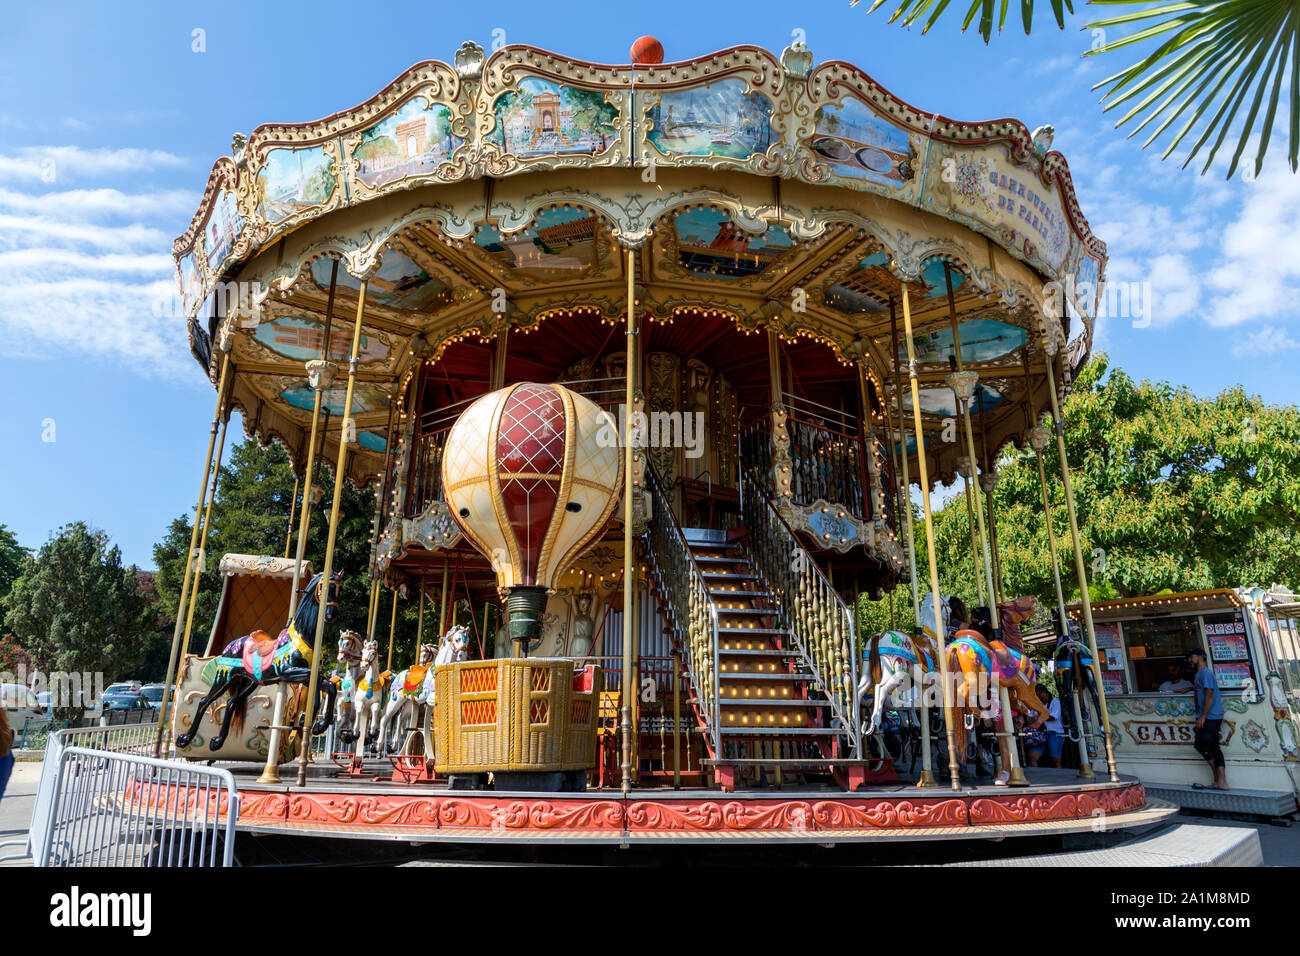 Merry-go-round oder Manege in Französisch, in der Nähe von Trocadero, Paris, Frankreich. Stockfoto